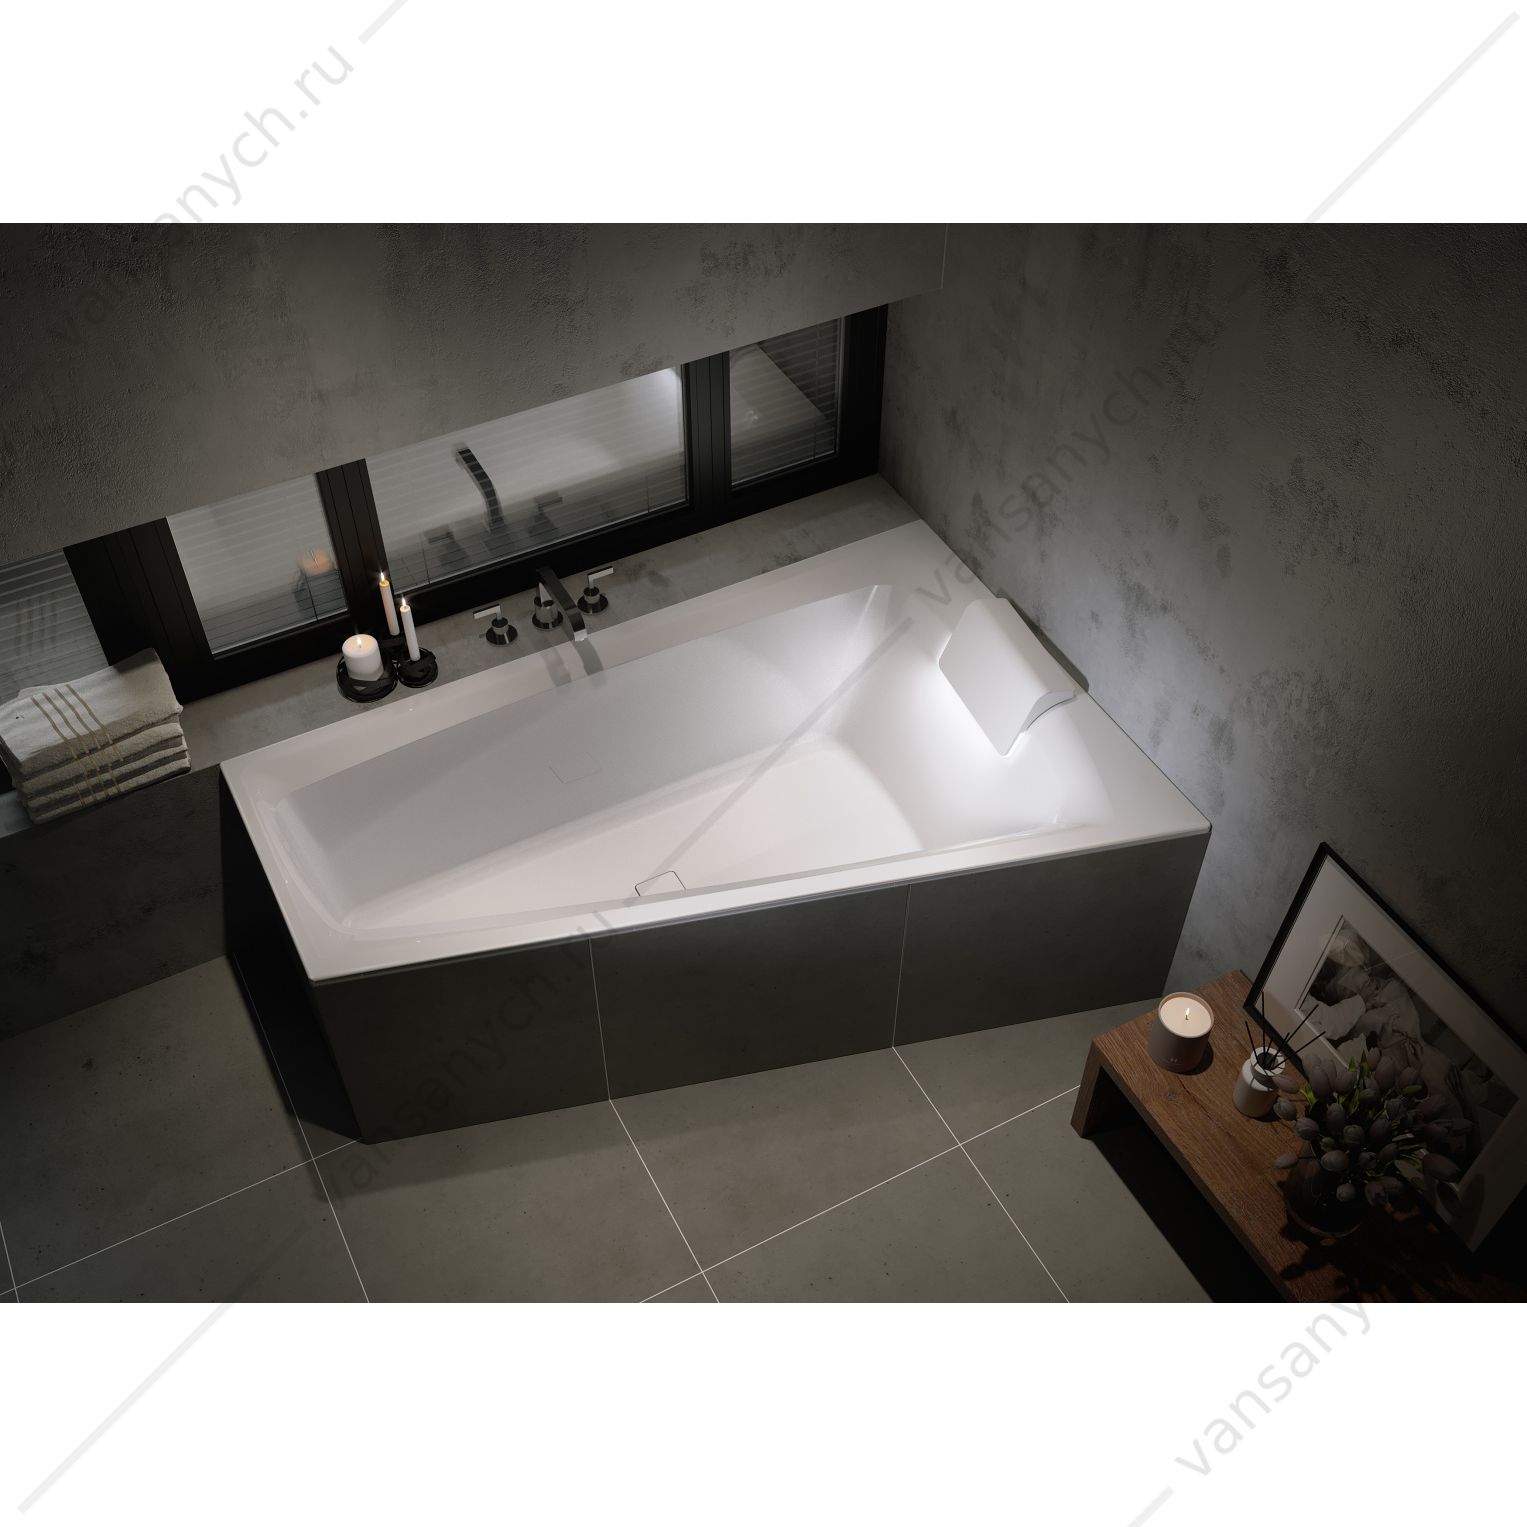 Ванна акриловая RIHO STILL SMART L 170x110, L асимметричная (вкл. сифон) RIHO (Чехия) купить в Тюмени (Ван Саныч™)